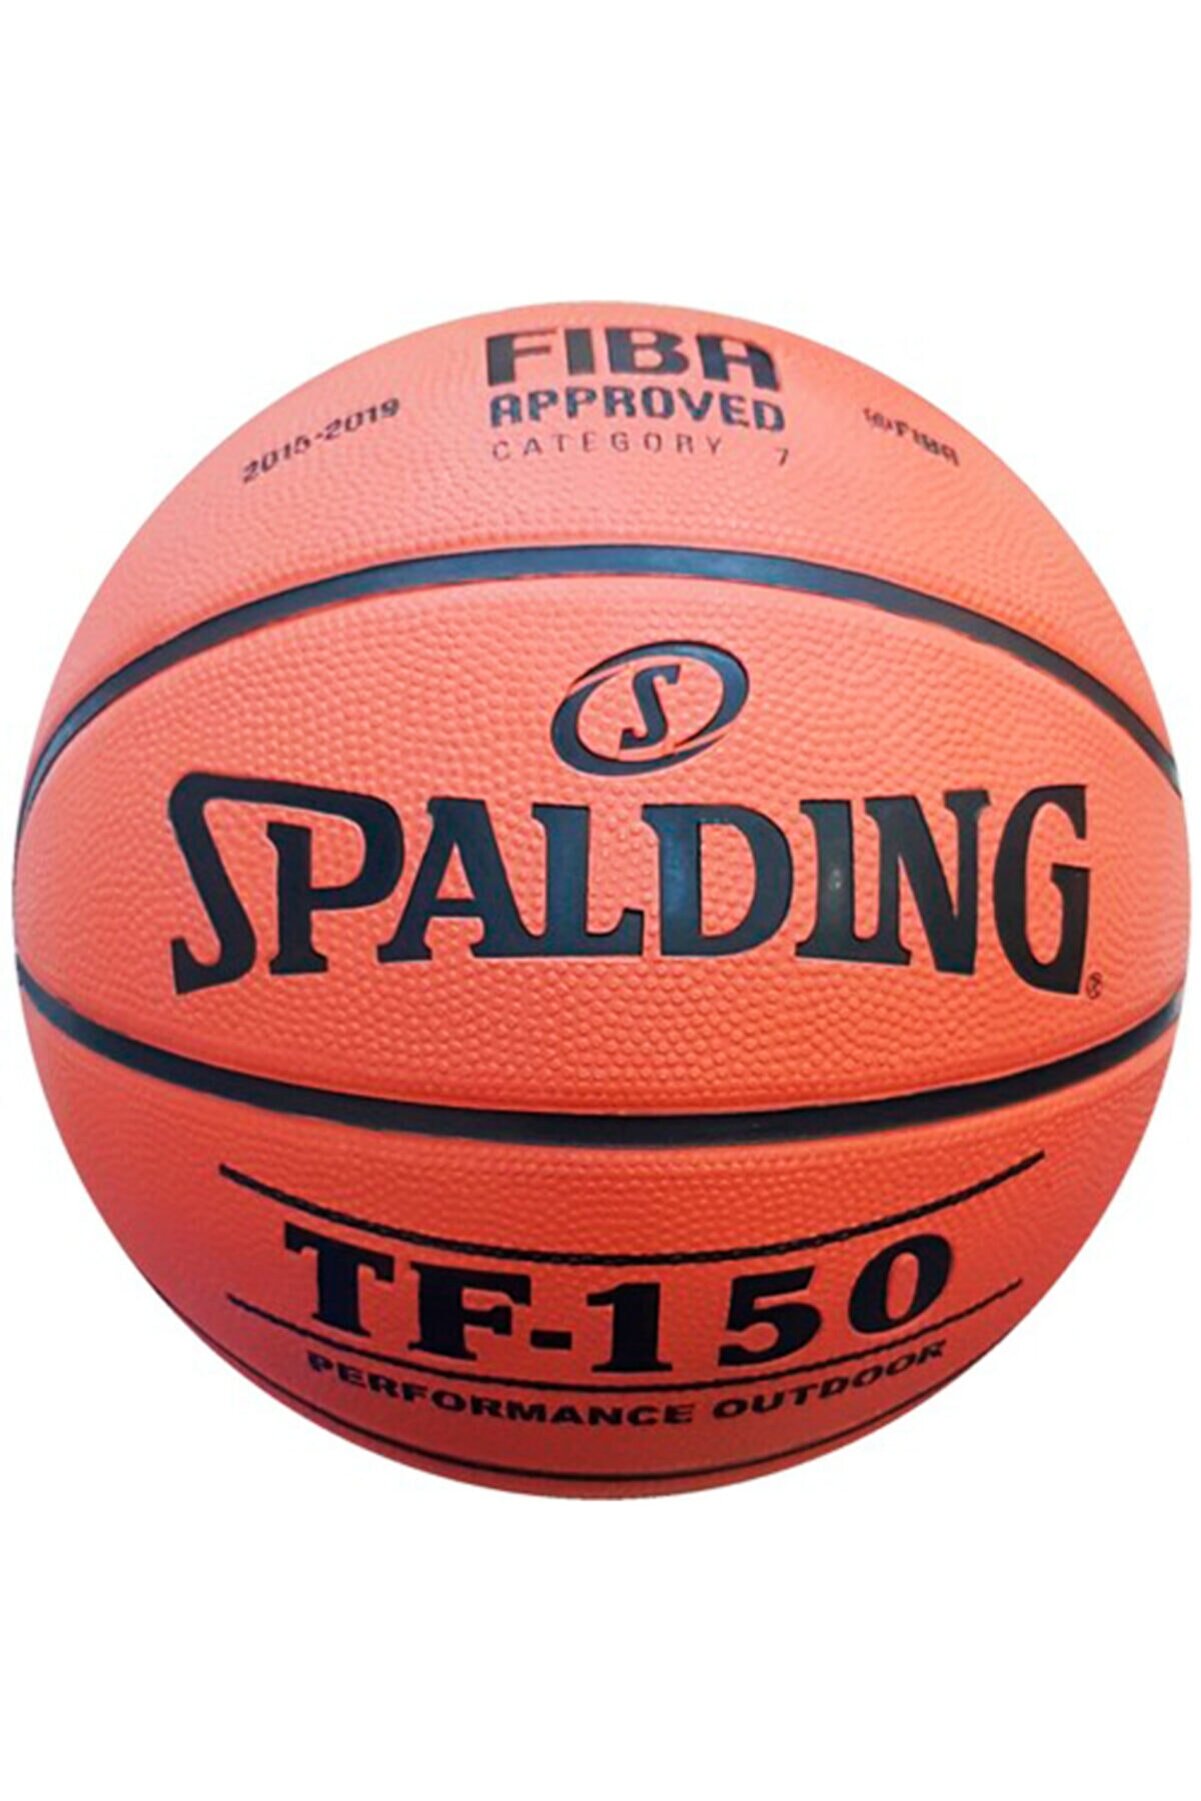 Spalding Tf-150 No:5 Basketbol Topu Basket Topu